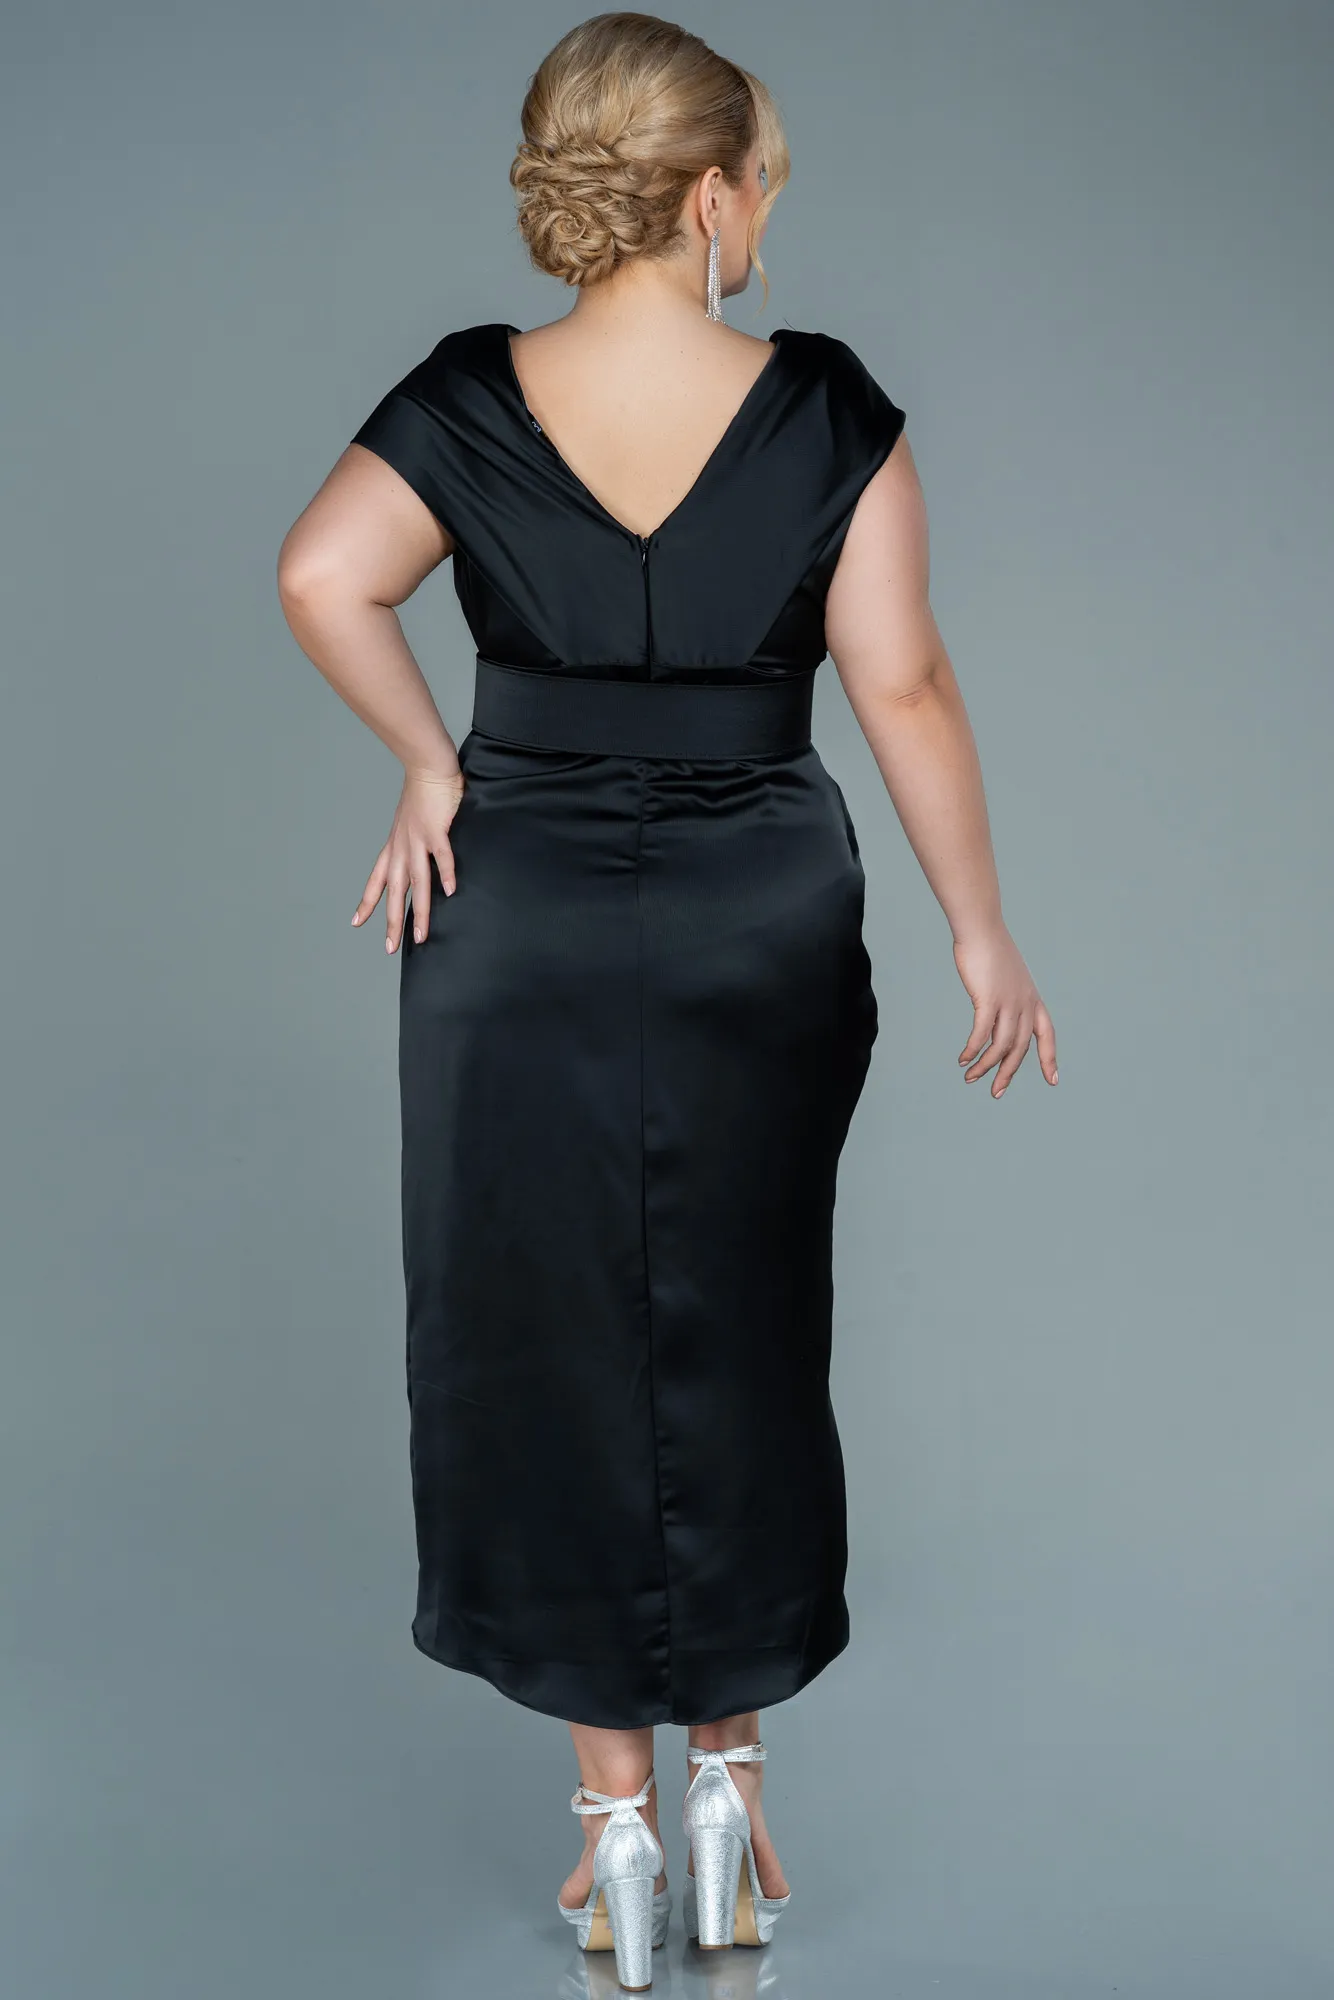 Black-Midi Satin Plus Size Evening Dress ABK1499